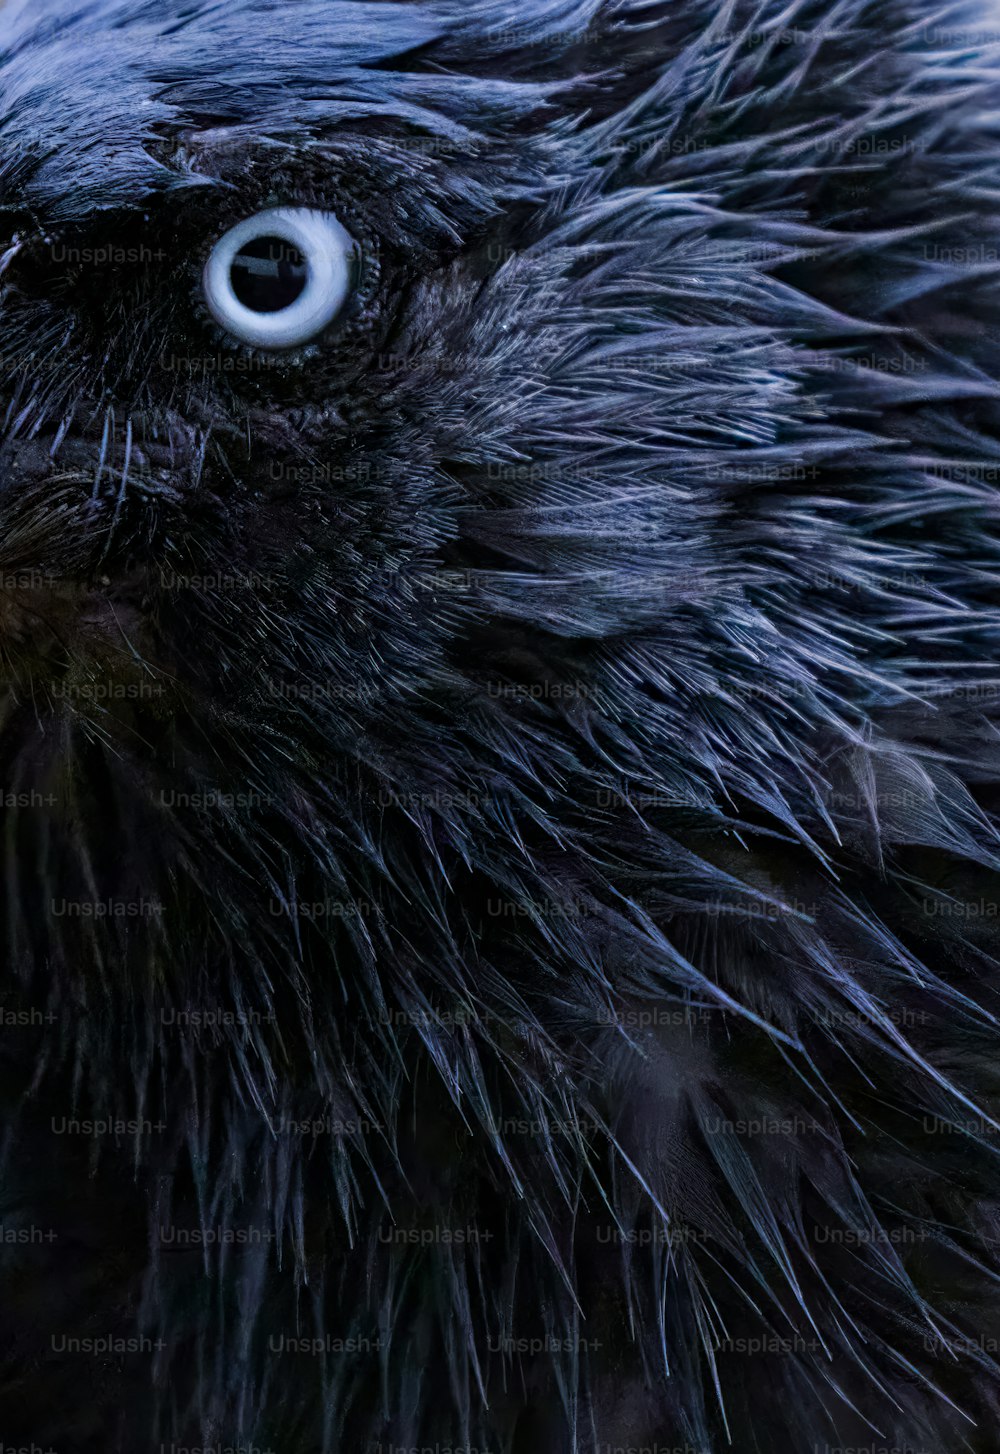 Un primer plano de un pájaro negro con ojos muy grandes